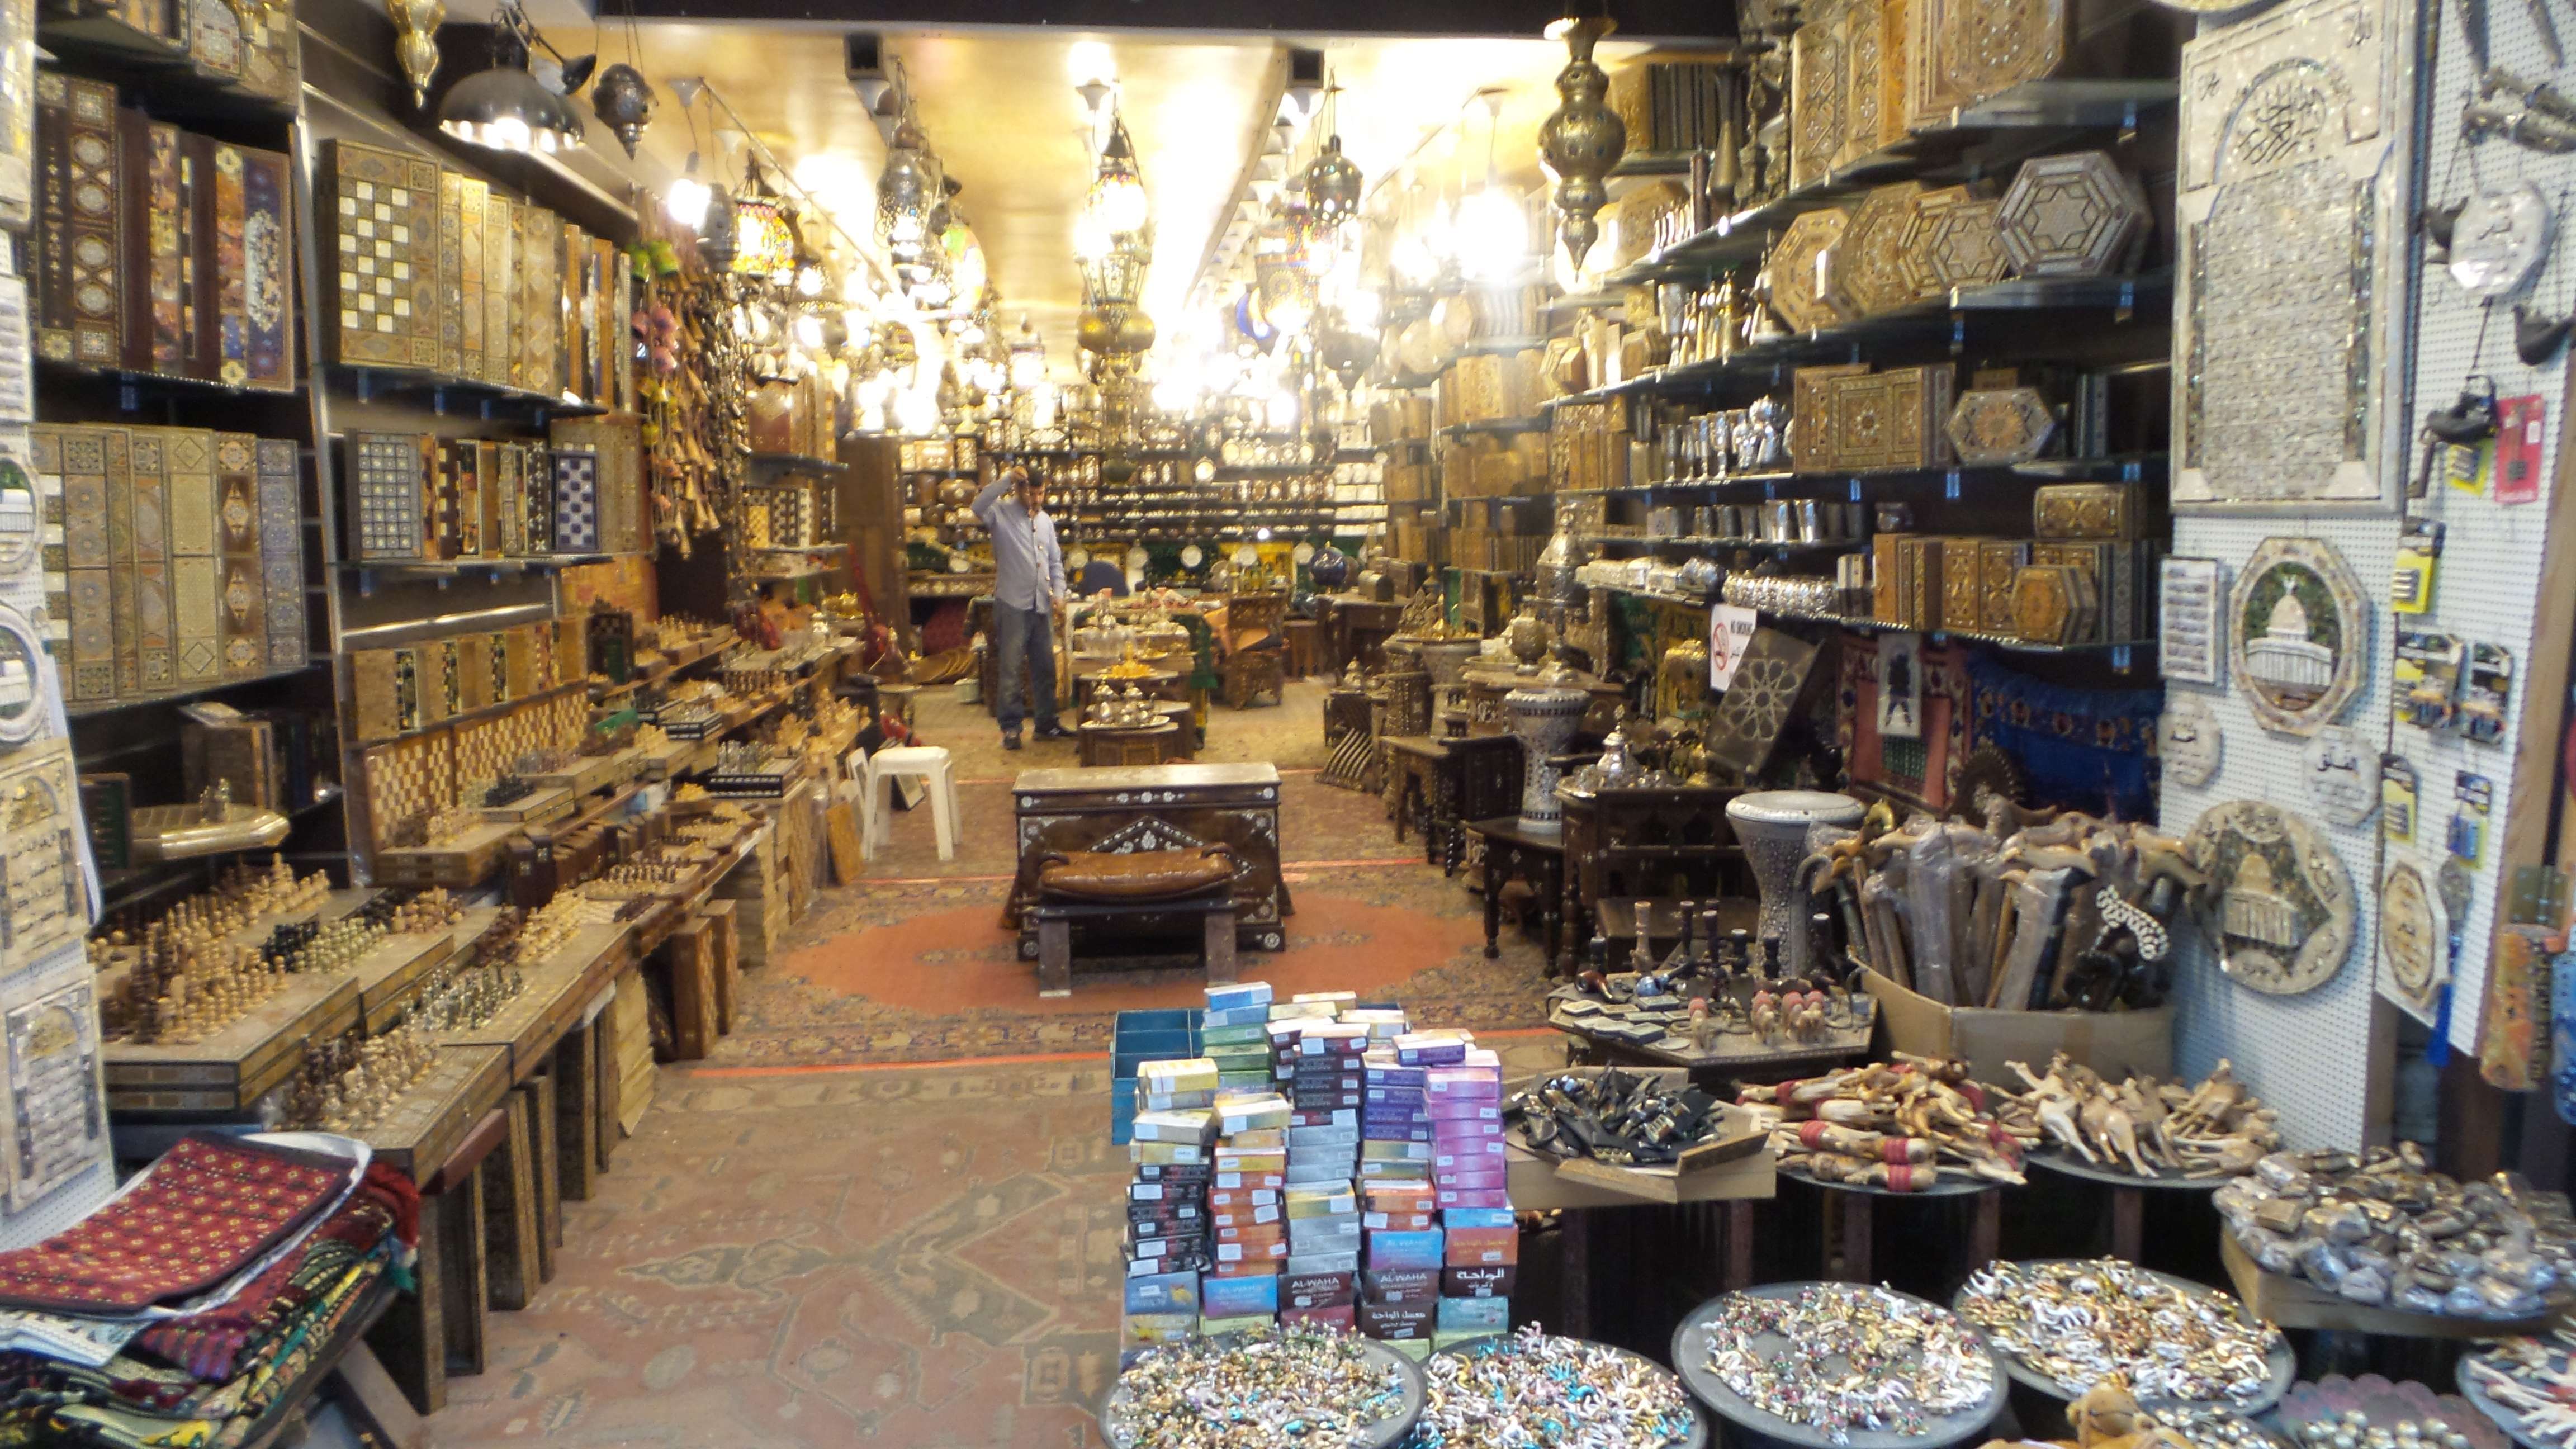 Shops on Via Dolorosa.